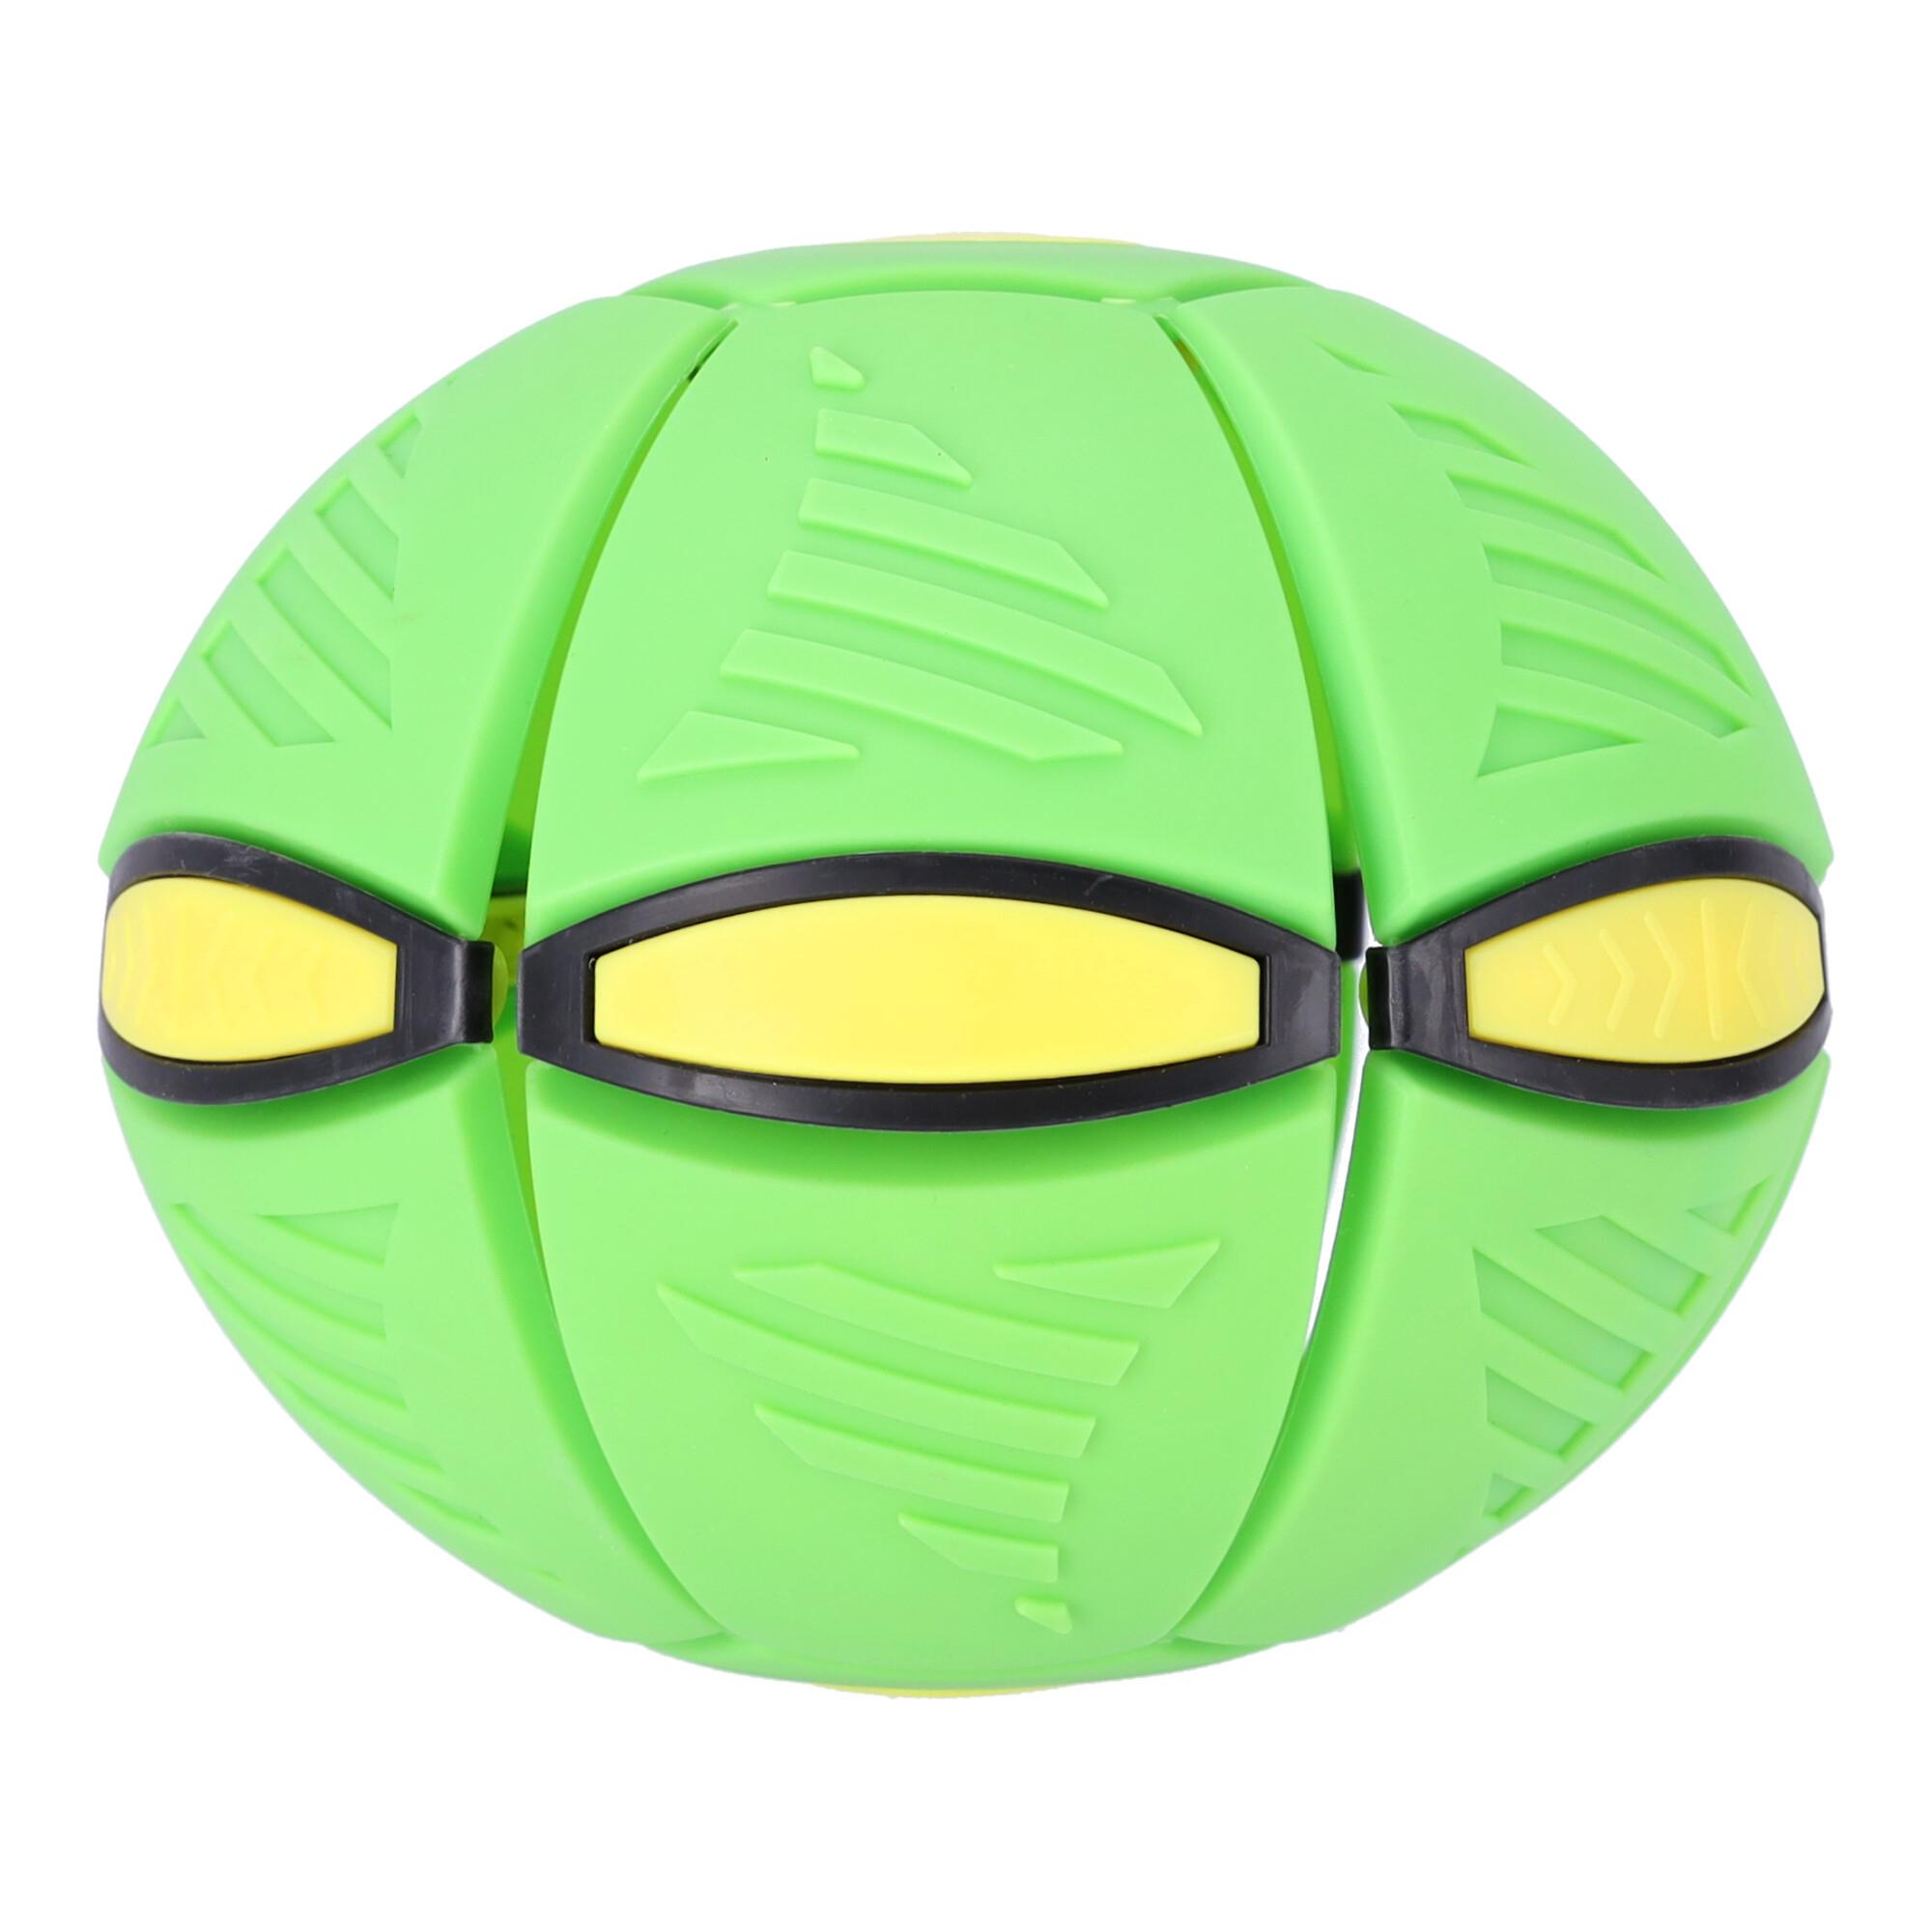 Latająca piłka 2w1, dyskopiłka - zielona